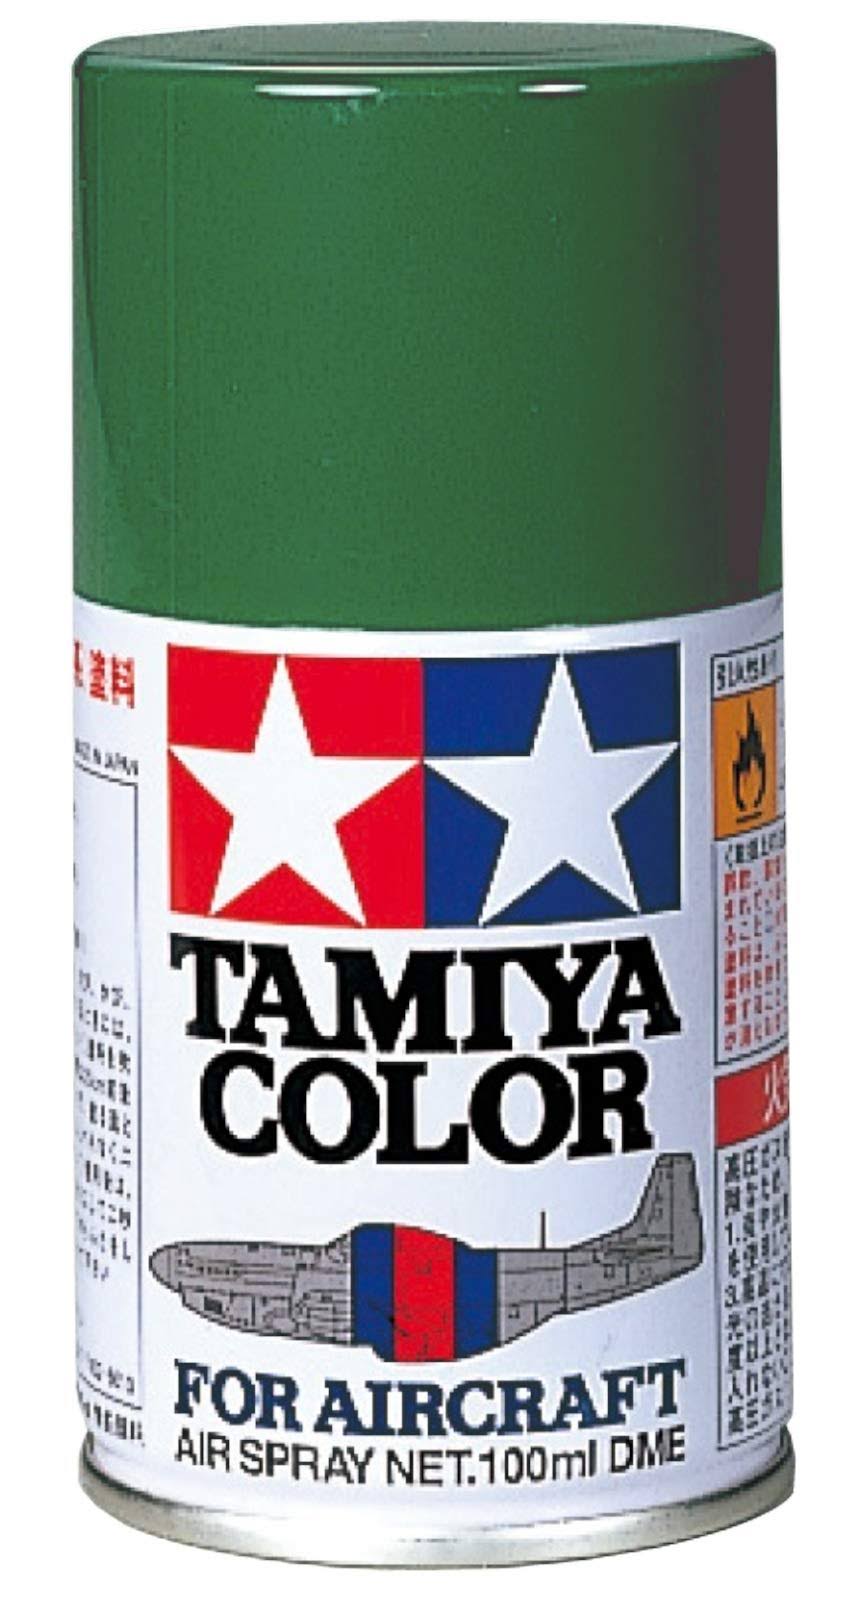 Tamiya AS-23 Spray - Light Green, 3oz